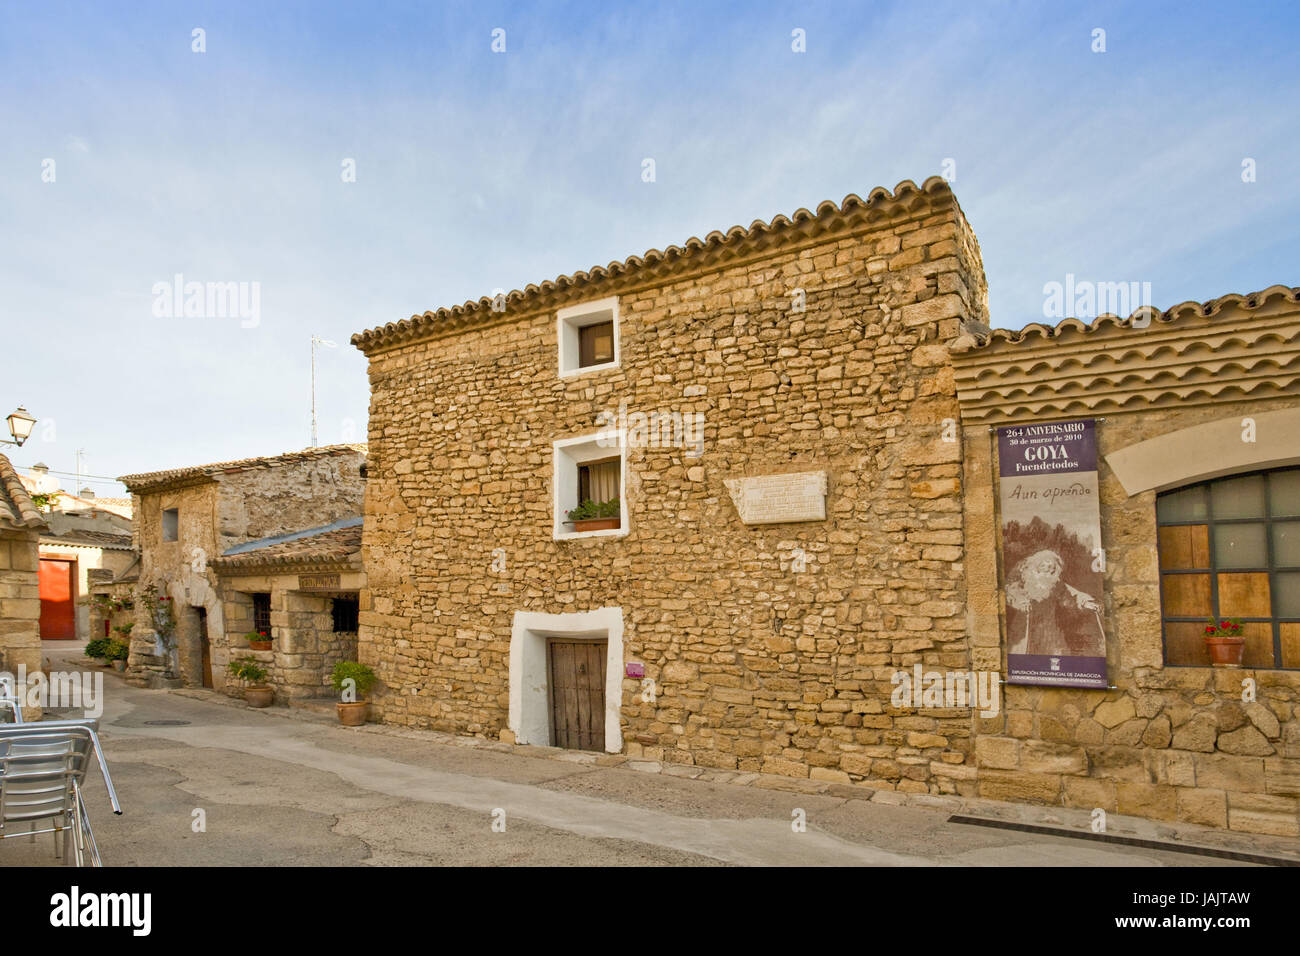 Spain,Aragon,Fuendetodos,birthplace of Francisco de Goya, Stock Photo